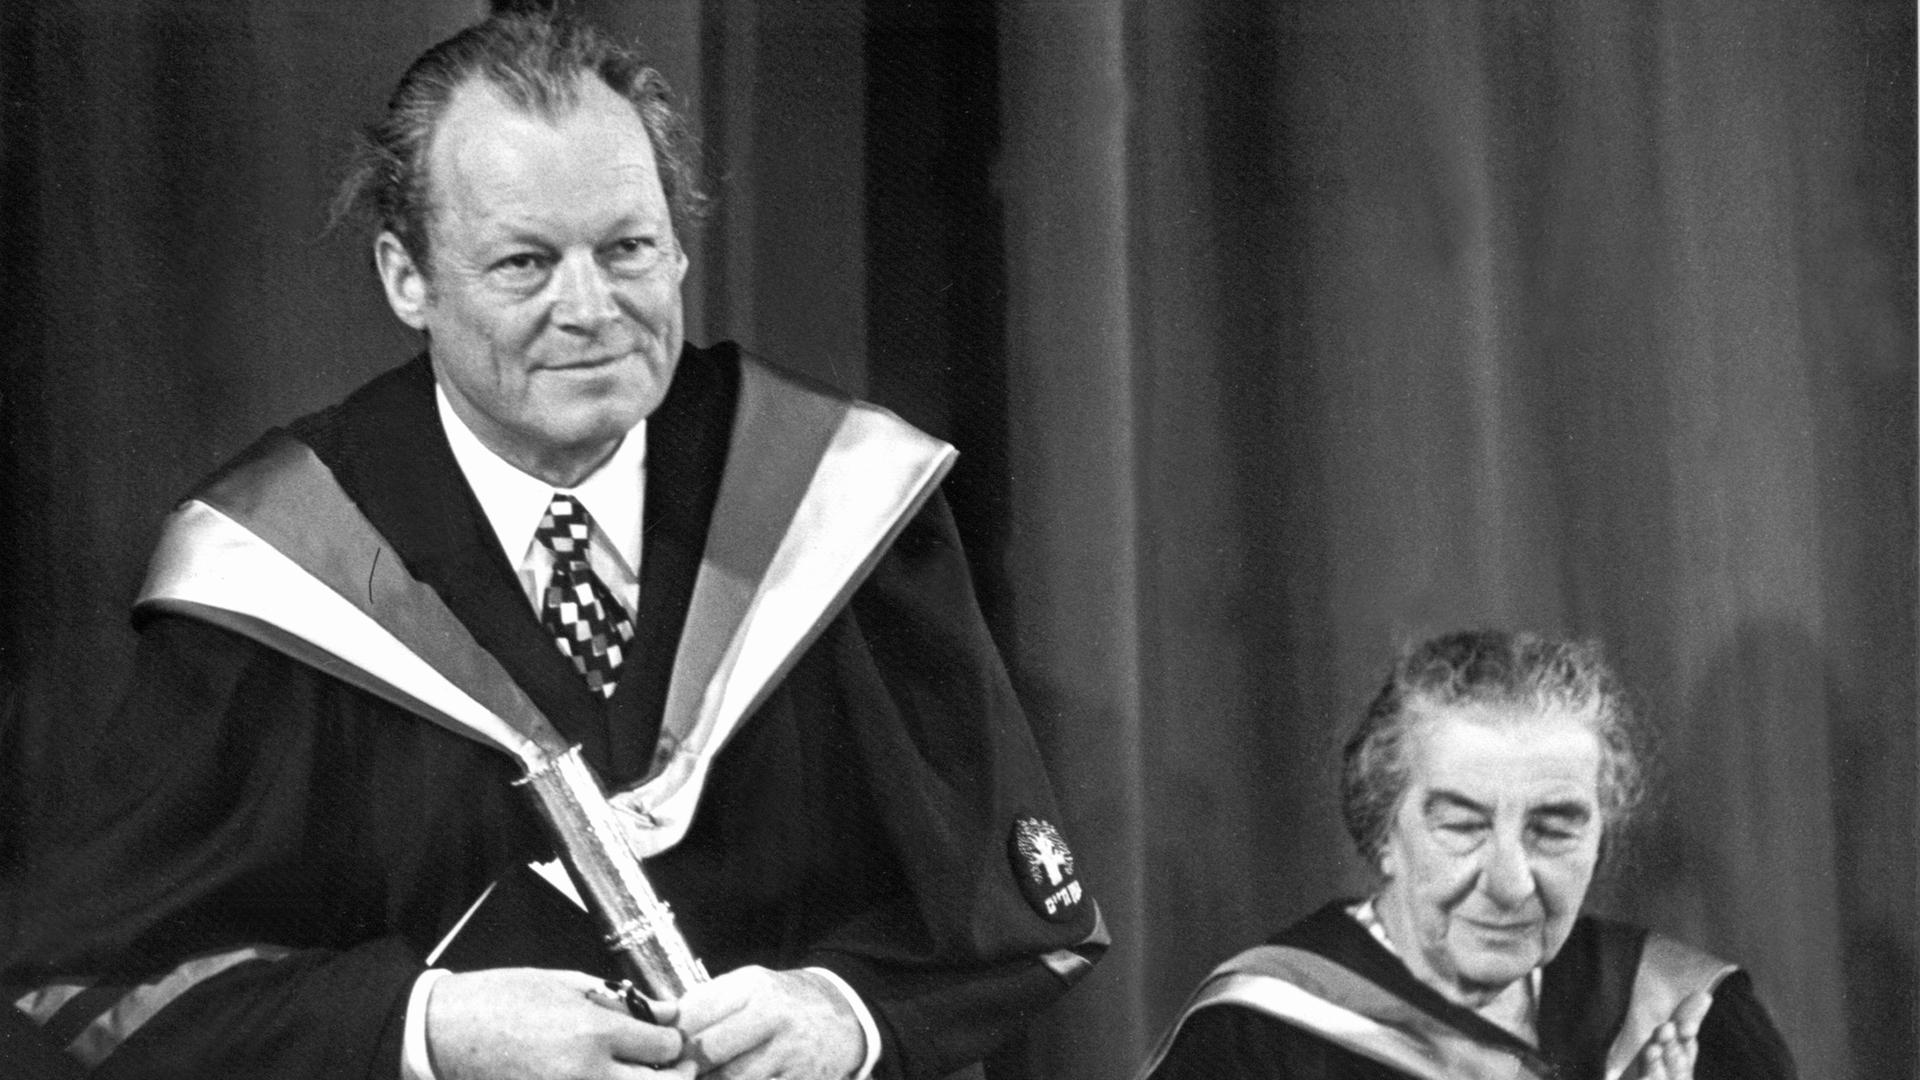 Zum Abschluss seines Israel-Besuchs am 11. Juni 1973 hat Willy Brandt die Ehrendoktorwürde des "Weizmann-Instituts der Wissenschaften" in Rehovot für seine "einmaligen und unablässigen Bemühungen zur Schaffung und Wahrung von Frieden und Eintracht unter den Völkern der Welt" erhalten. Neben ihm Israels Ministerpräsidentin Golda Meir. Als erster deutscher Regierungschef besuchte Bundeskanzler Willy Brandt (SPD) vom 7.-11. Juni 1973 Israel.